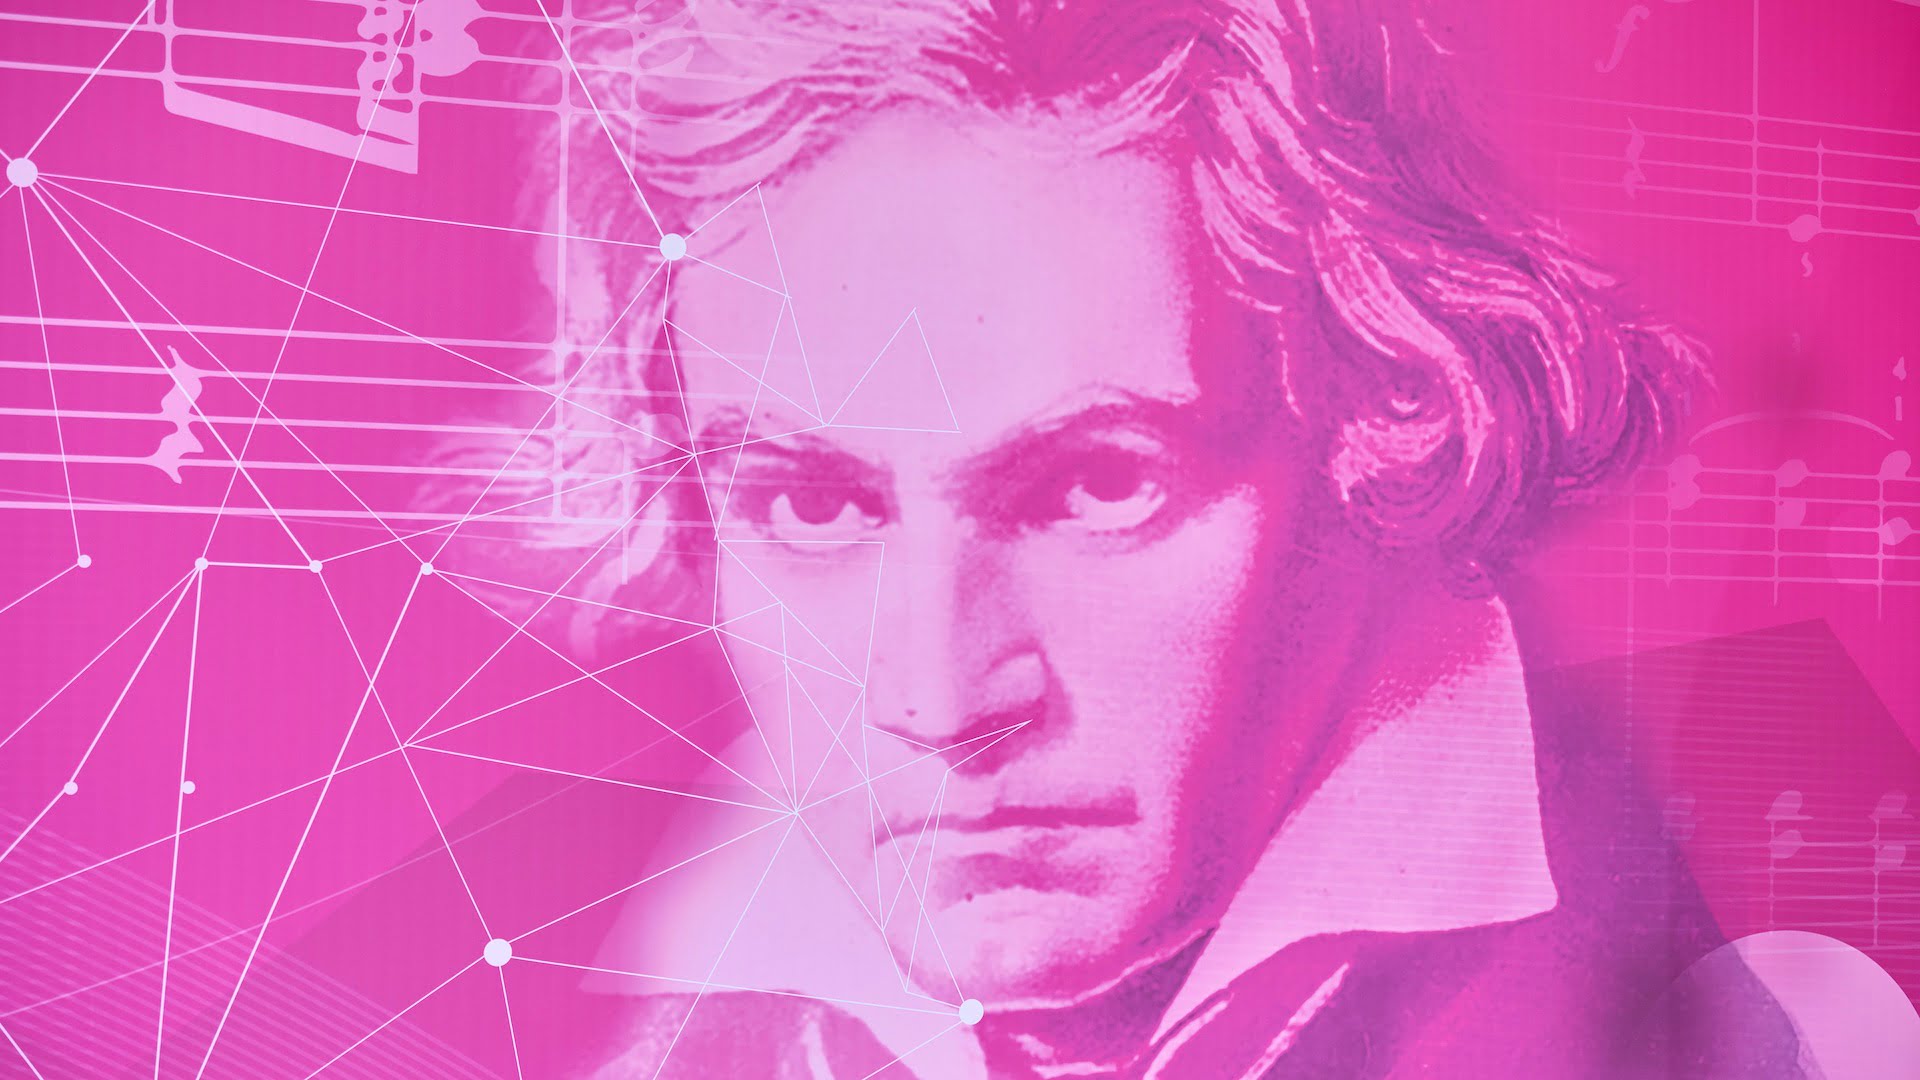 KI vollendet Beethoven-Sinfonie: Stream & Infos zur Uraufführung